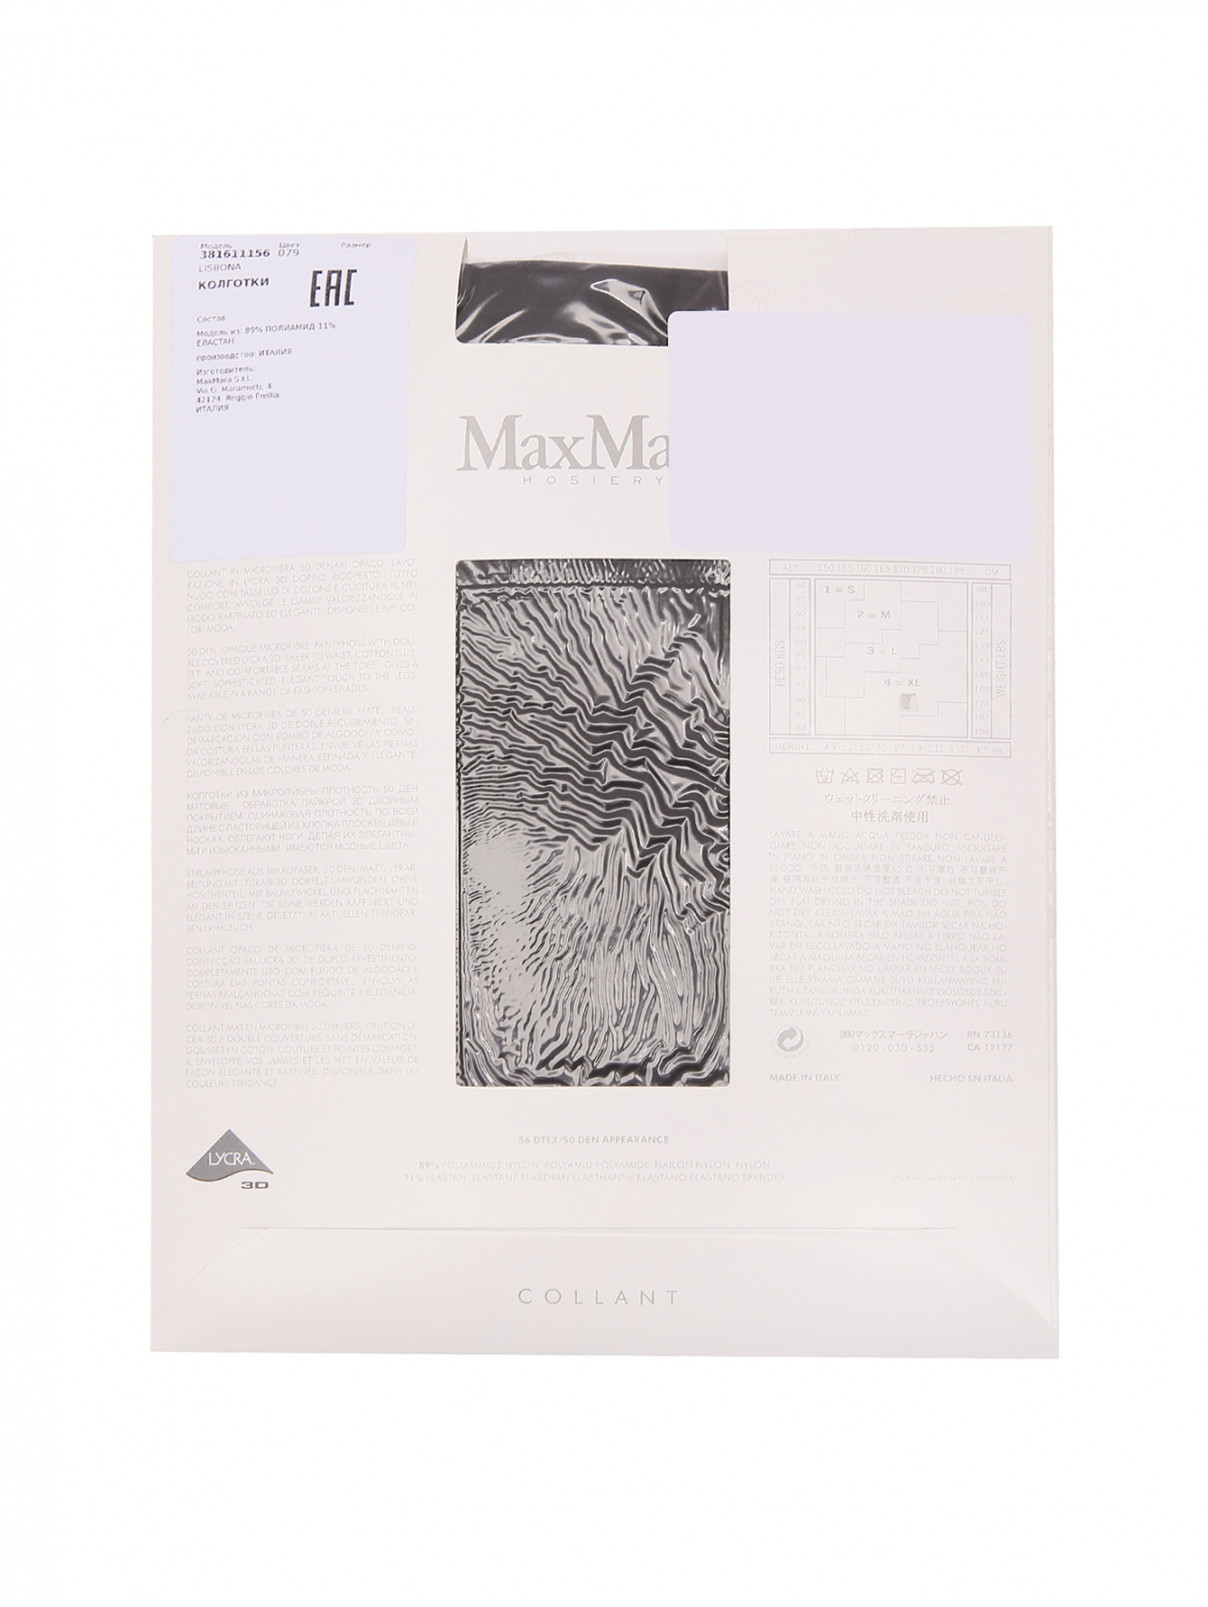 Колготки Microfibra 50 Max Mara  –  Обтравка1  – Цвет:  Черный